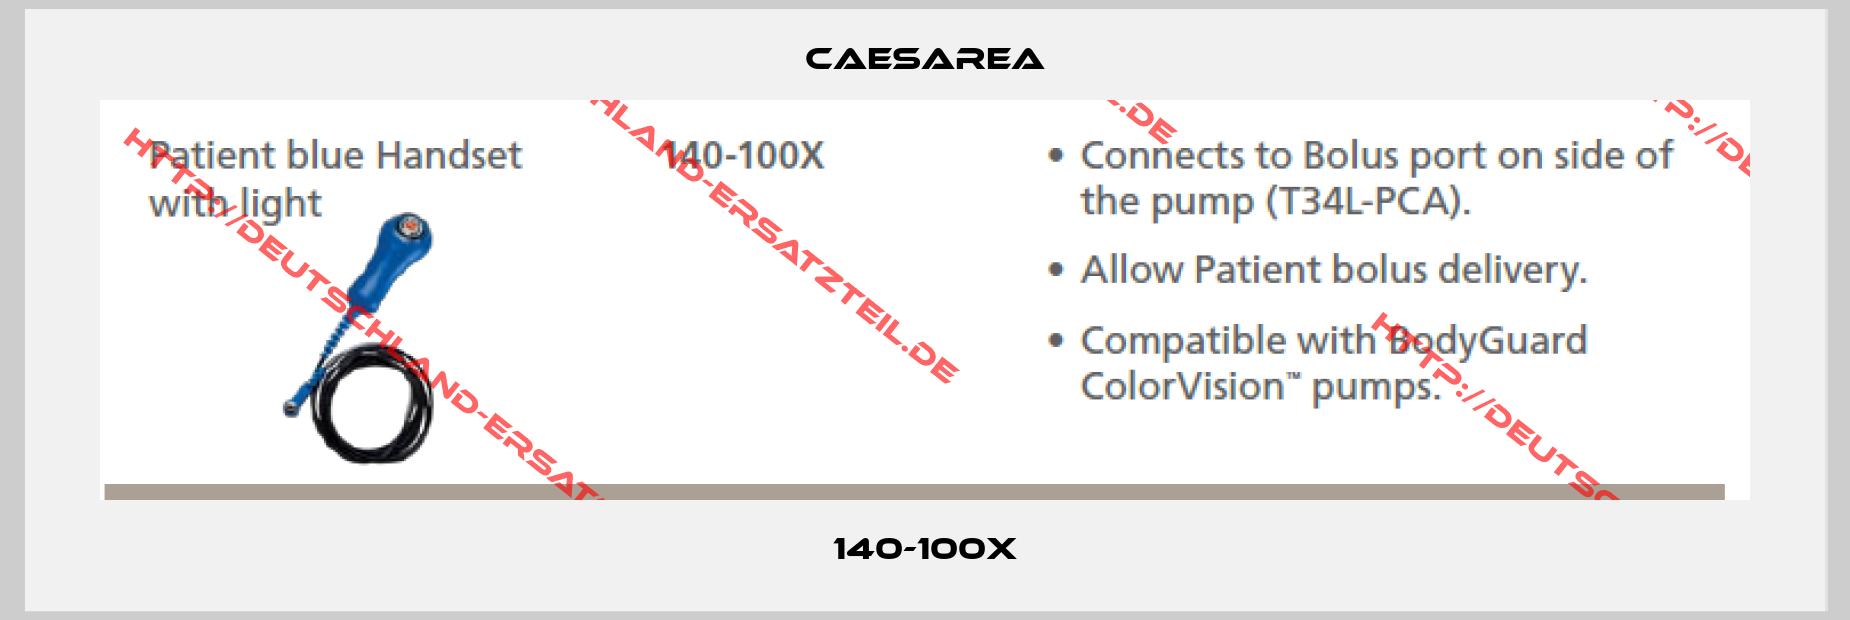 Caesarea-140-100X